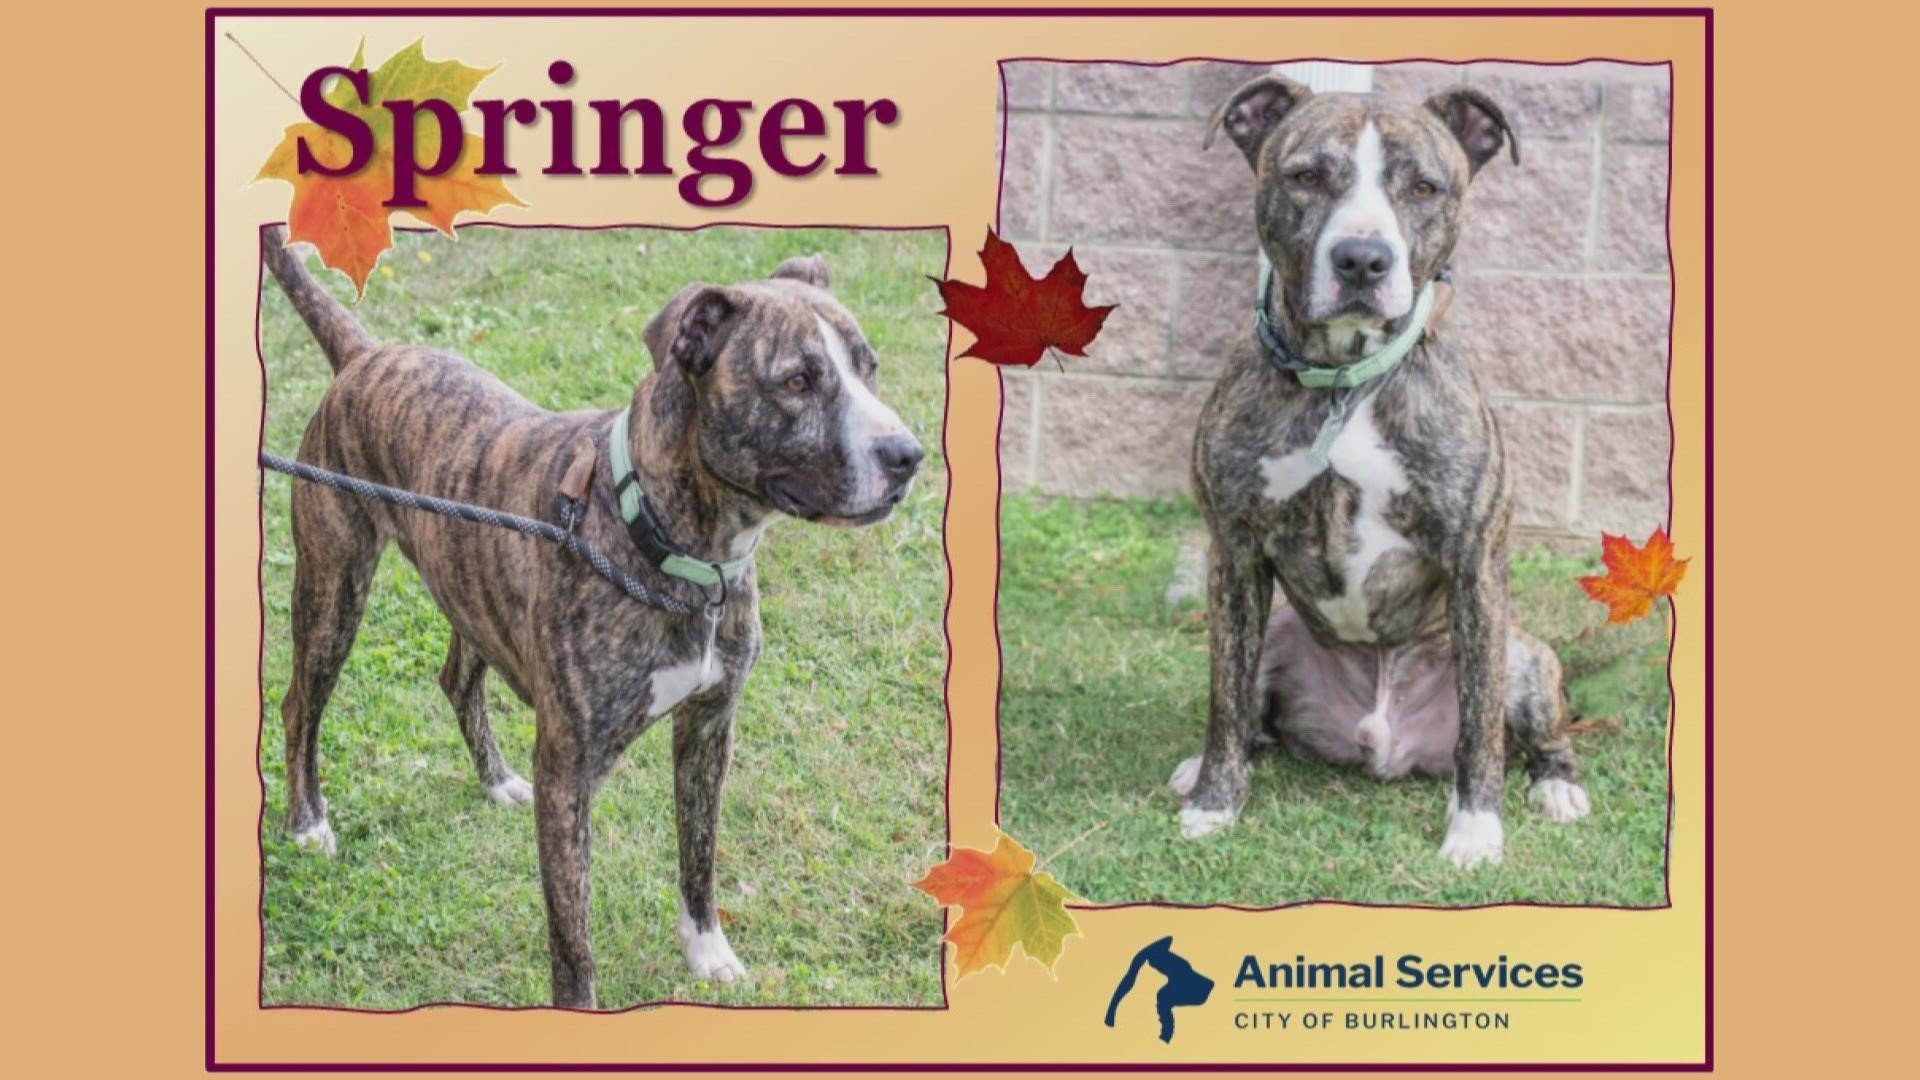 Let’s get Springer adopted!